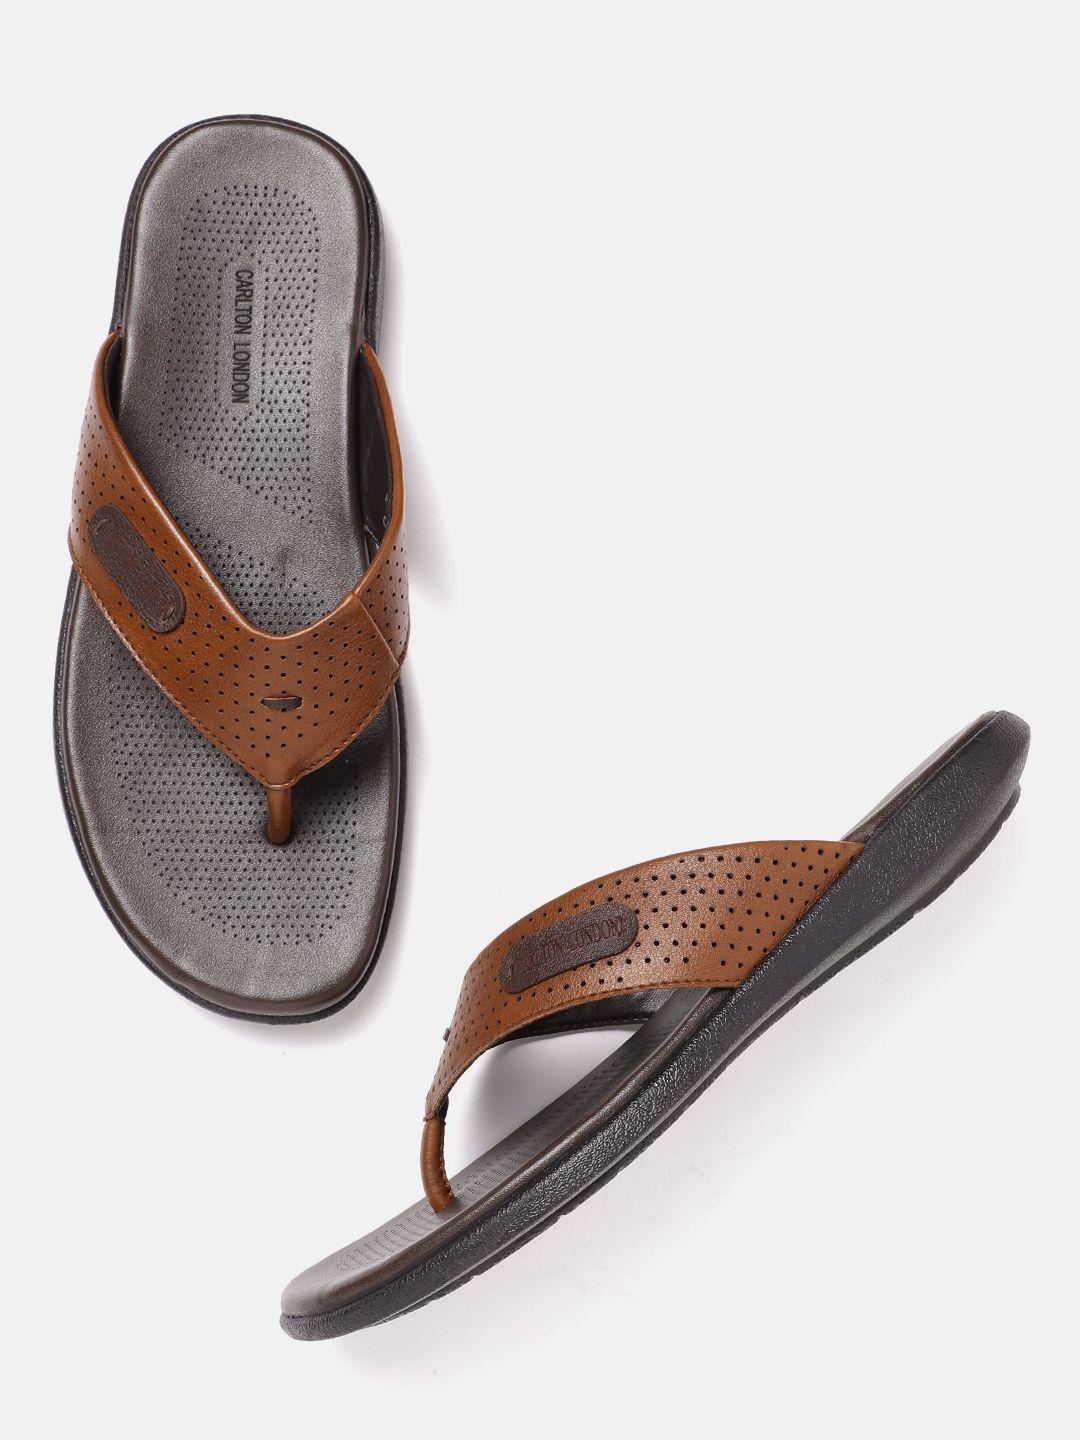 carlton-london-men-tan-brown-perforated-comfort-sandals